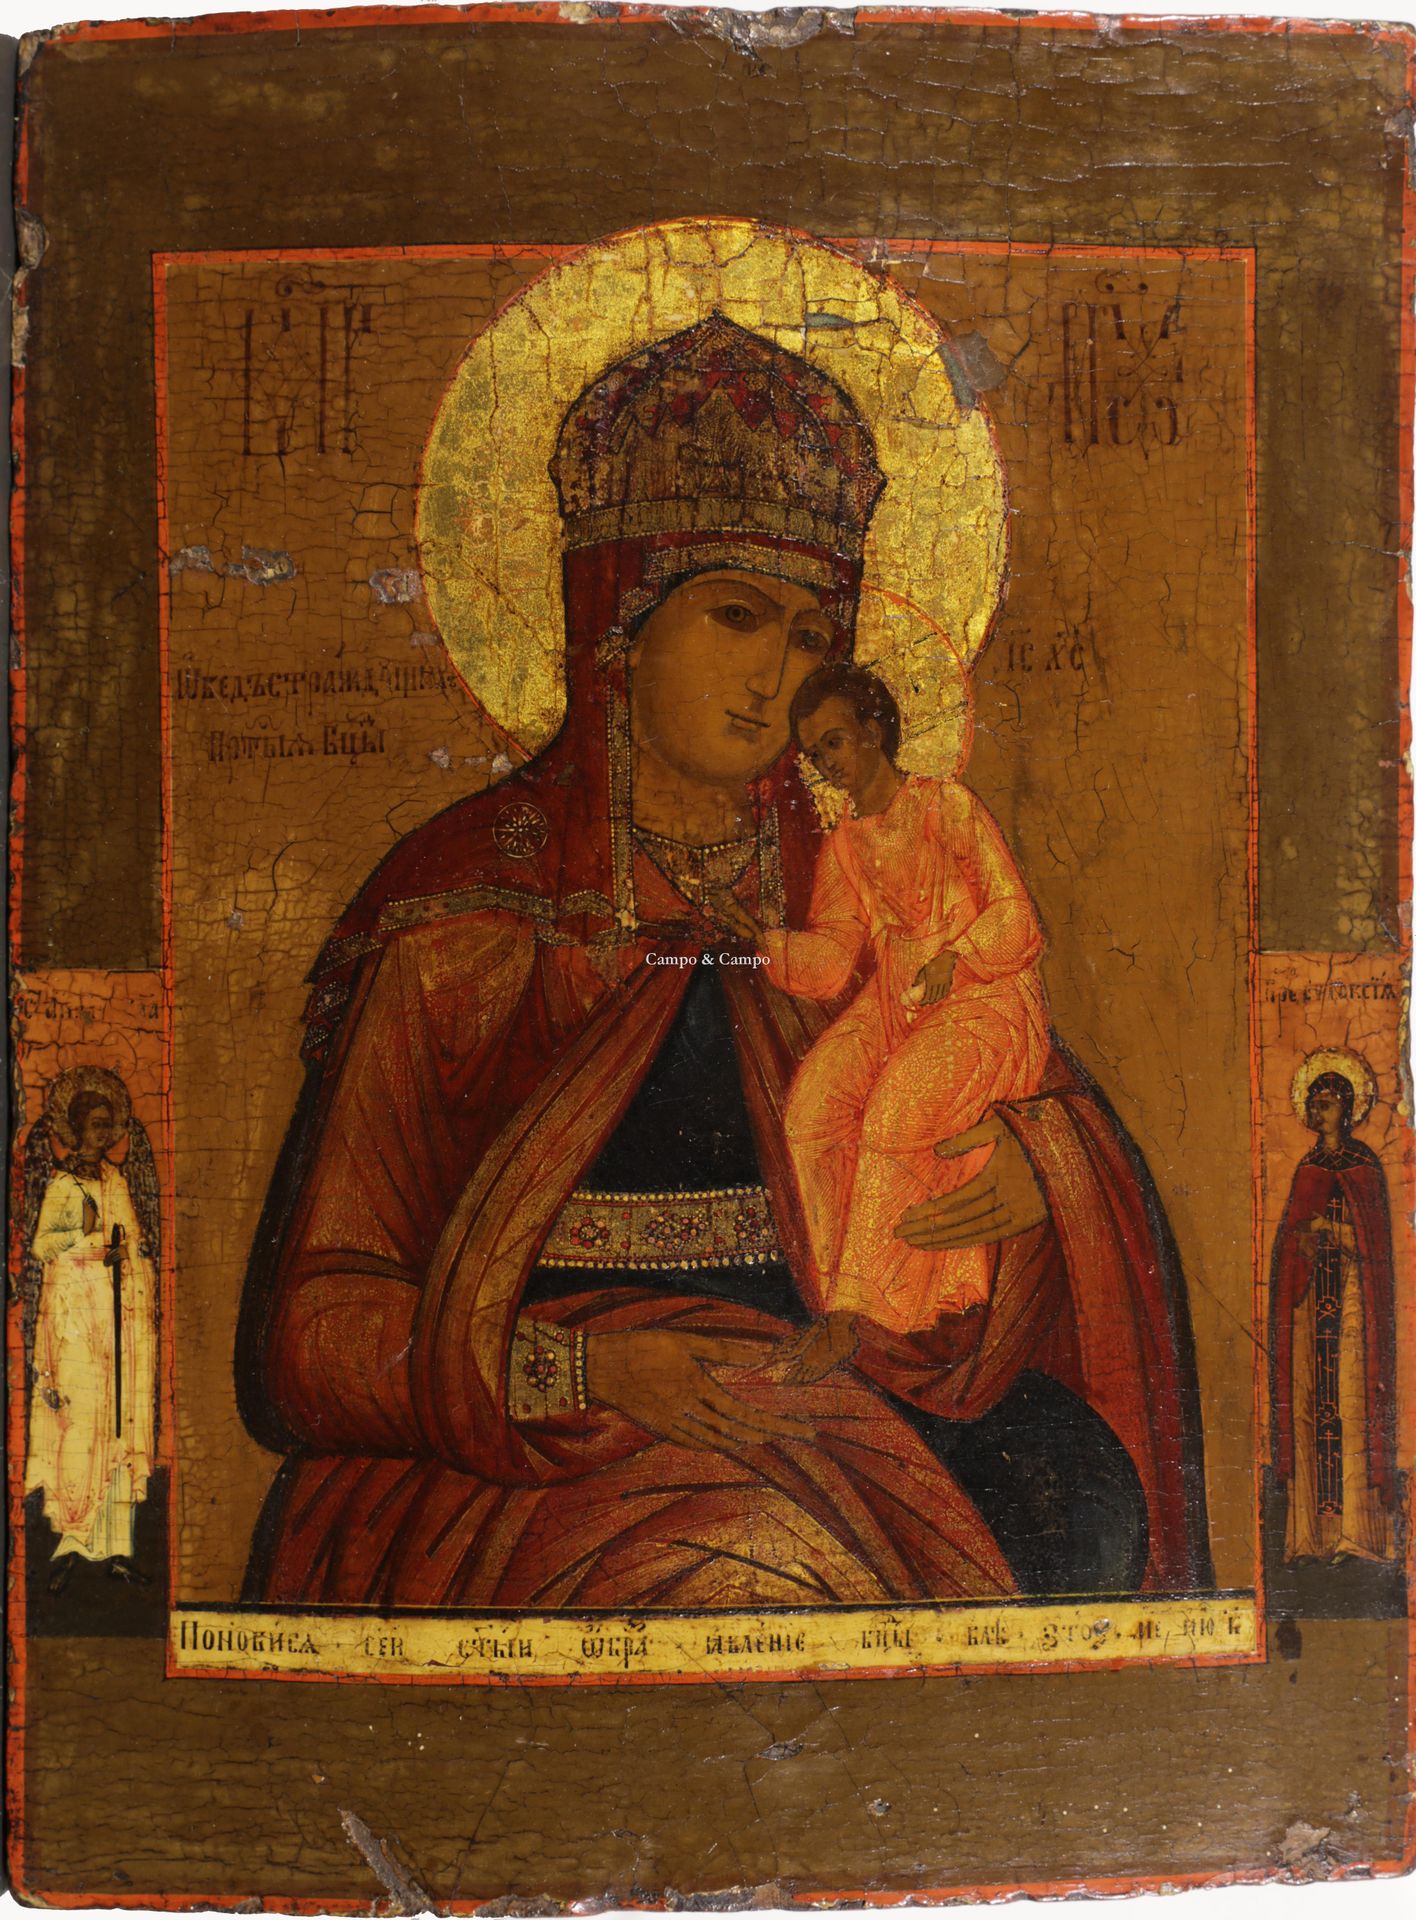 RUSSISCH ICOON Icono ruso de la Virgen con el Niño
Russisch icoon met de voorste&hellip;